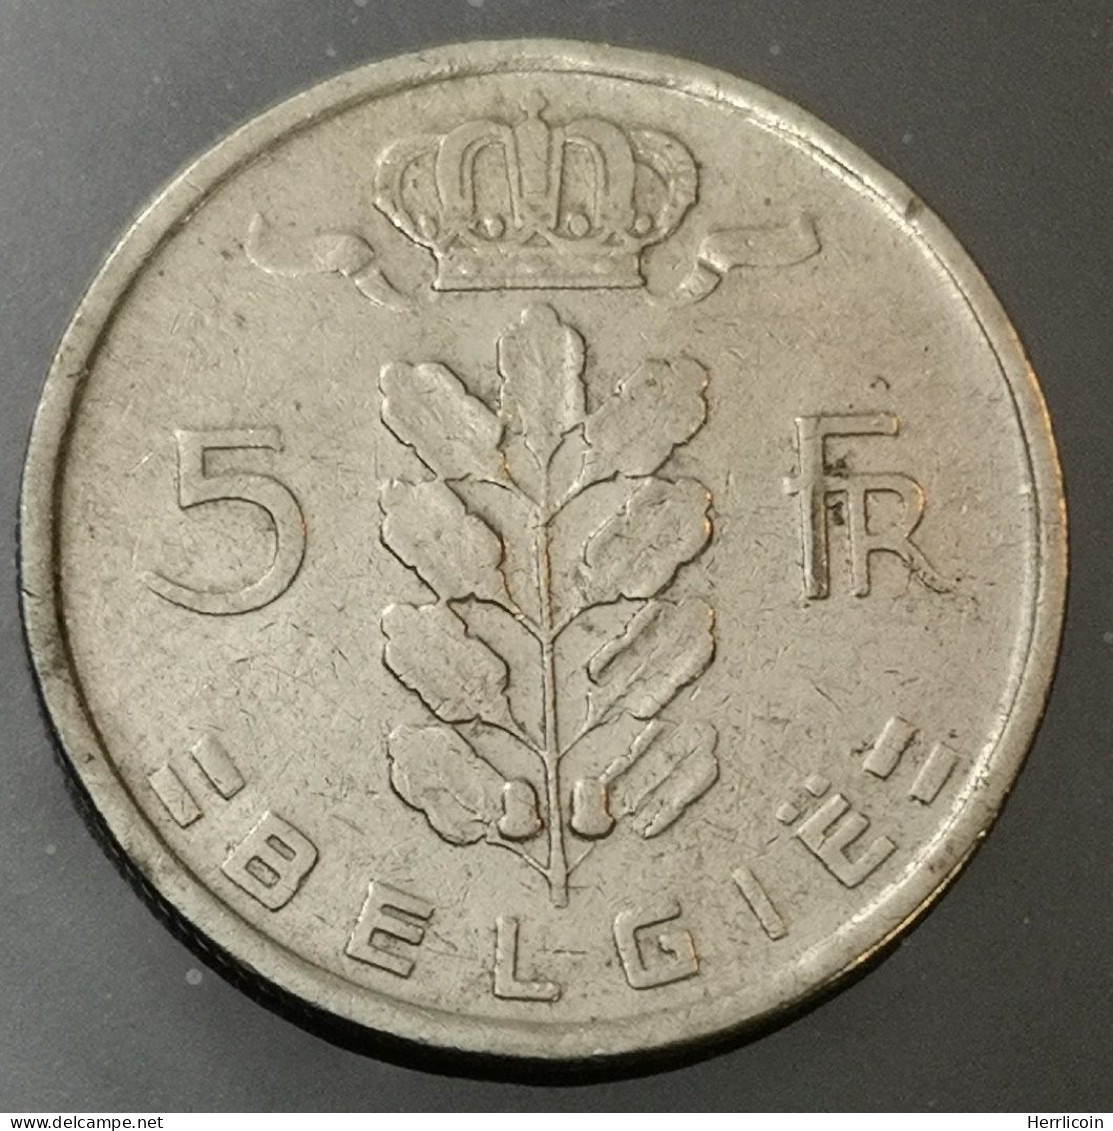 Monnaie Belgique - 1950 - 5 Francs Cérès en Néerlandais - 5 Francs